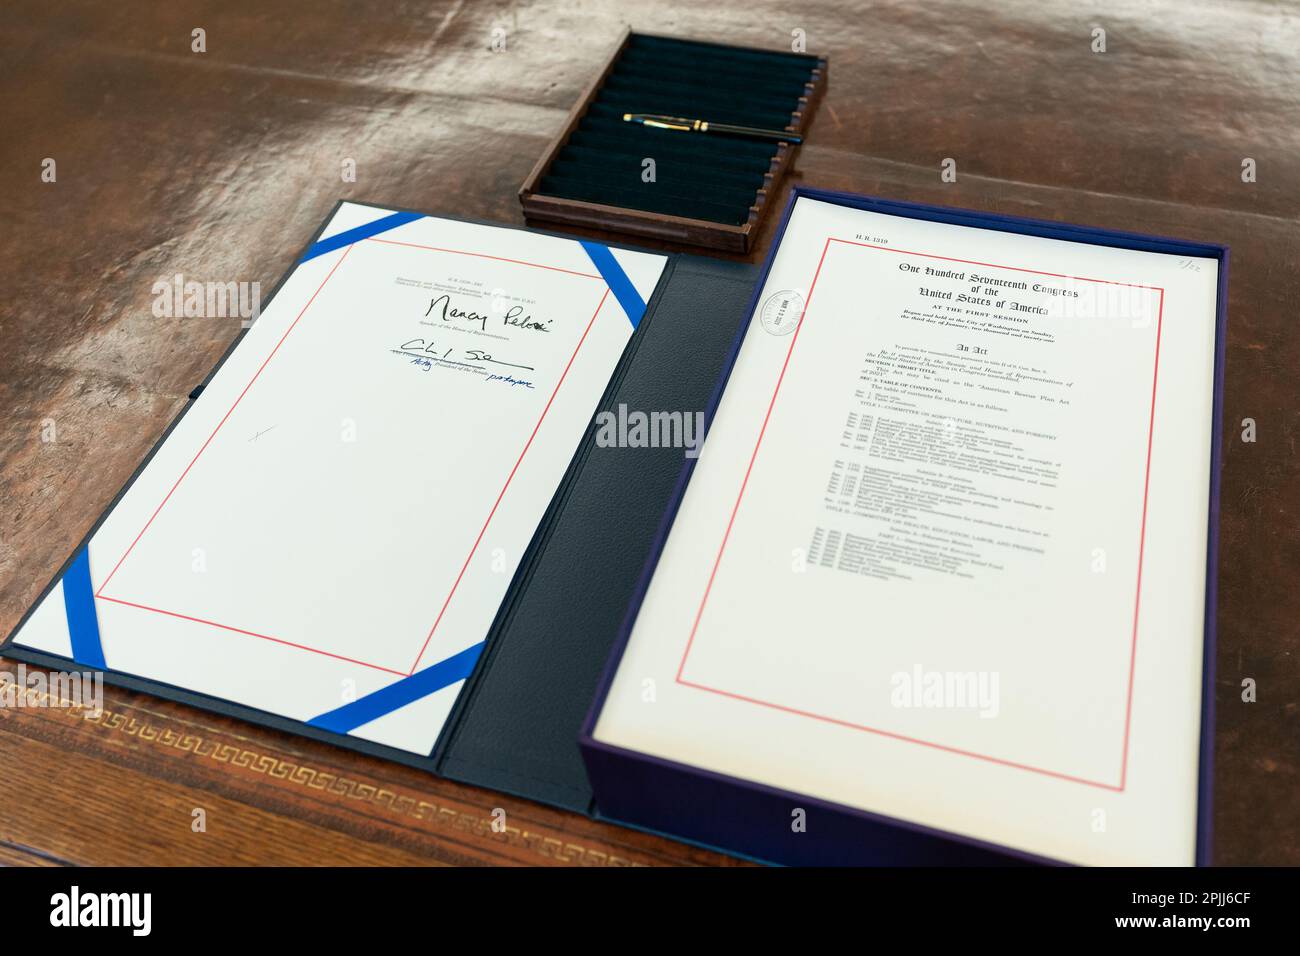 L'American Rescue Plan siede sul Resolute Desk nell'Oval Office della Casa Bianca Giovedi, 11 marzo 2021, prima di essere firmato dal presidente Joe Biden. (Foto ufficiale della Casa Bianca di Adam Schultz) Foto Stock